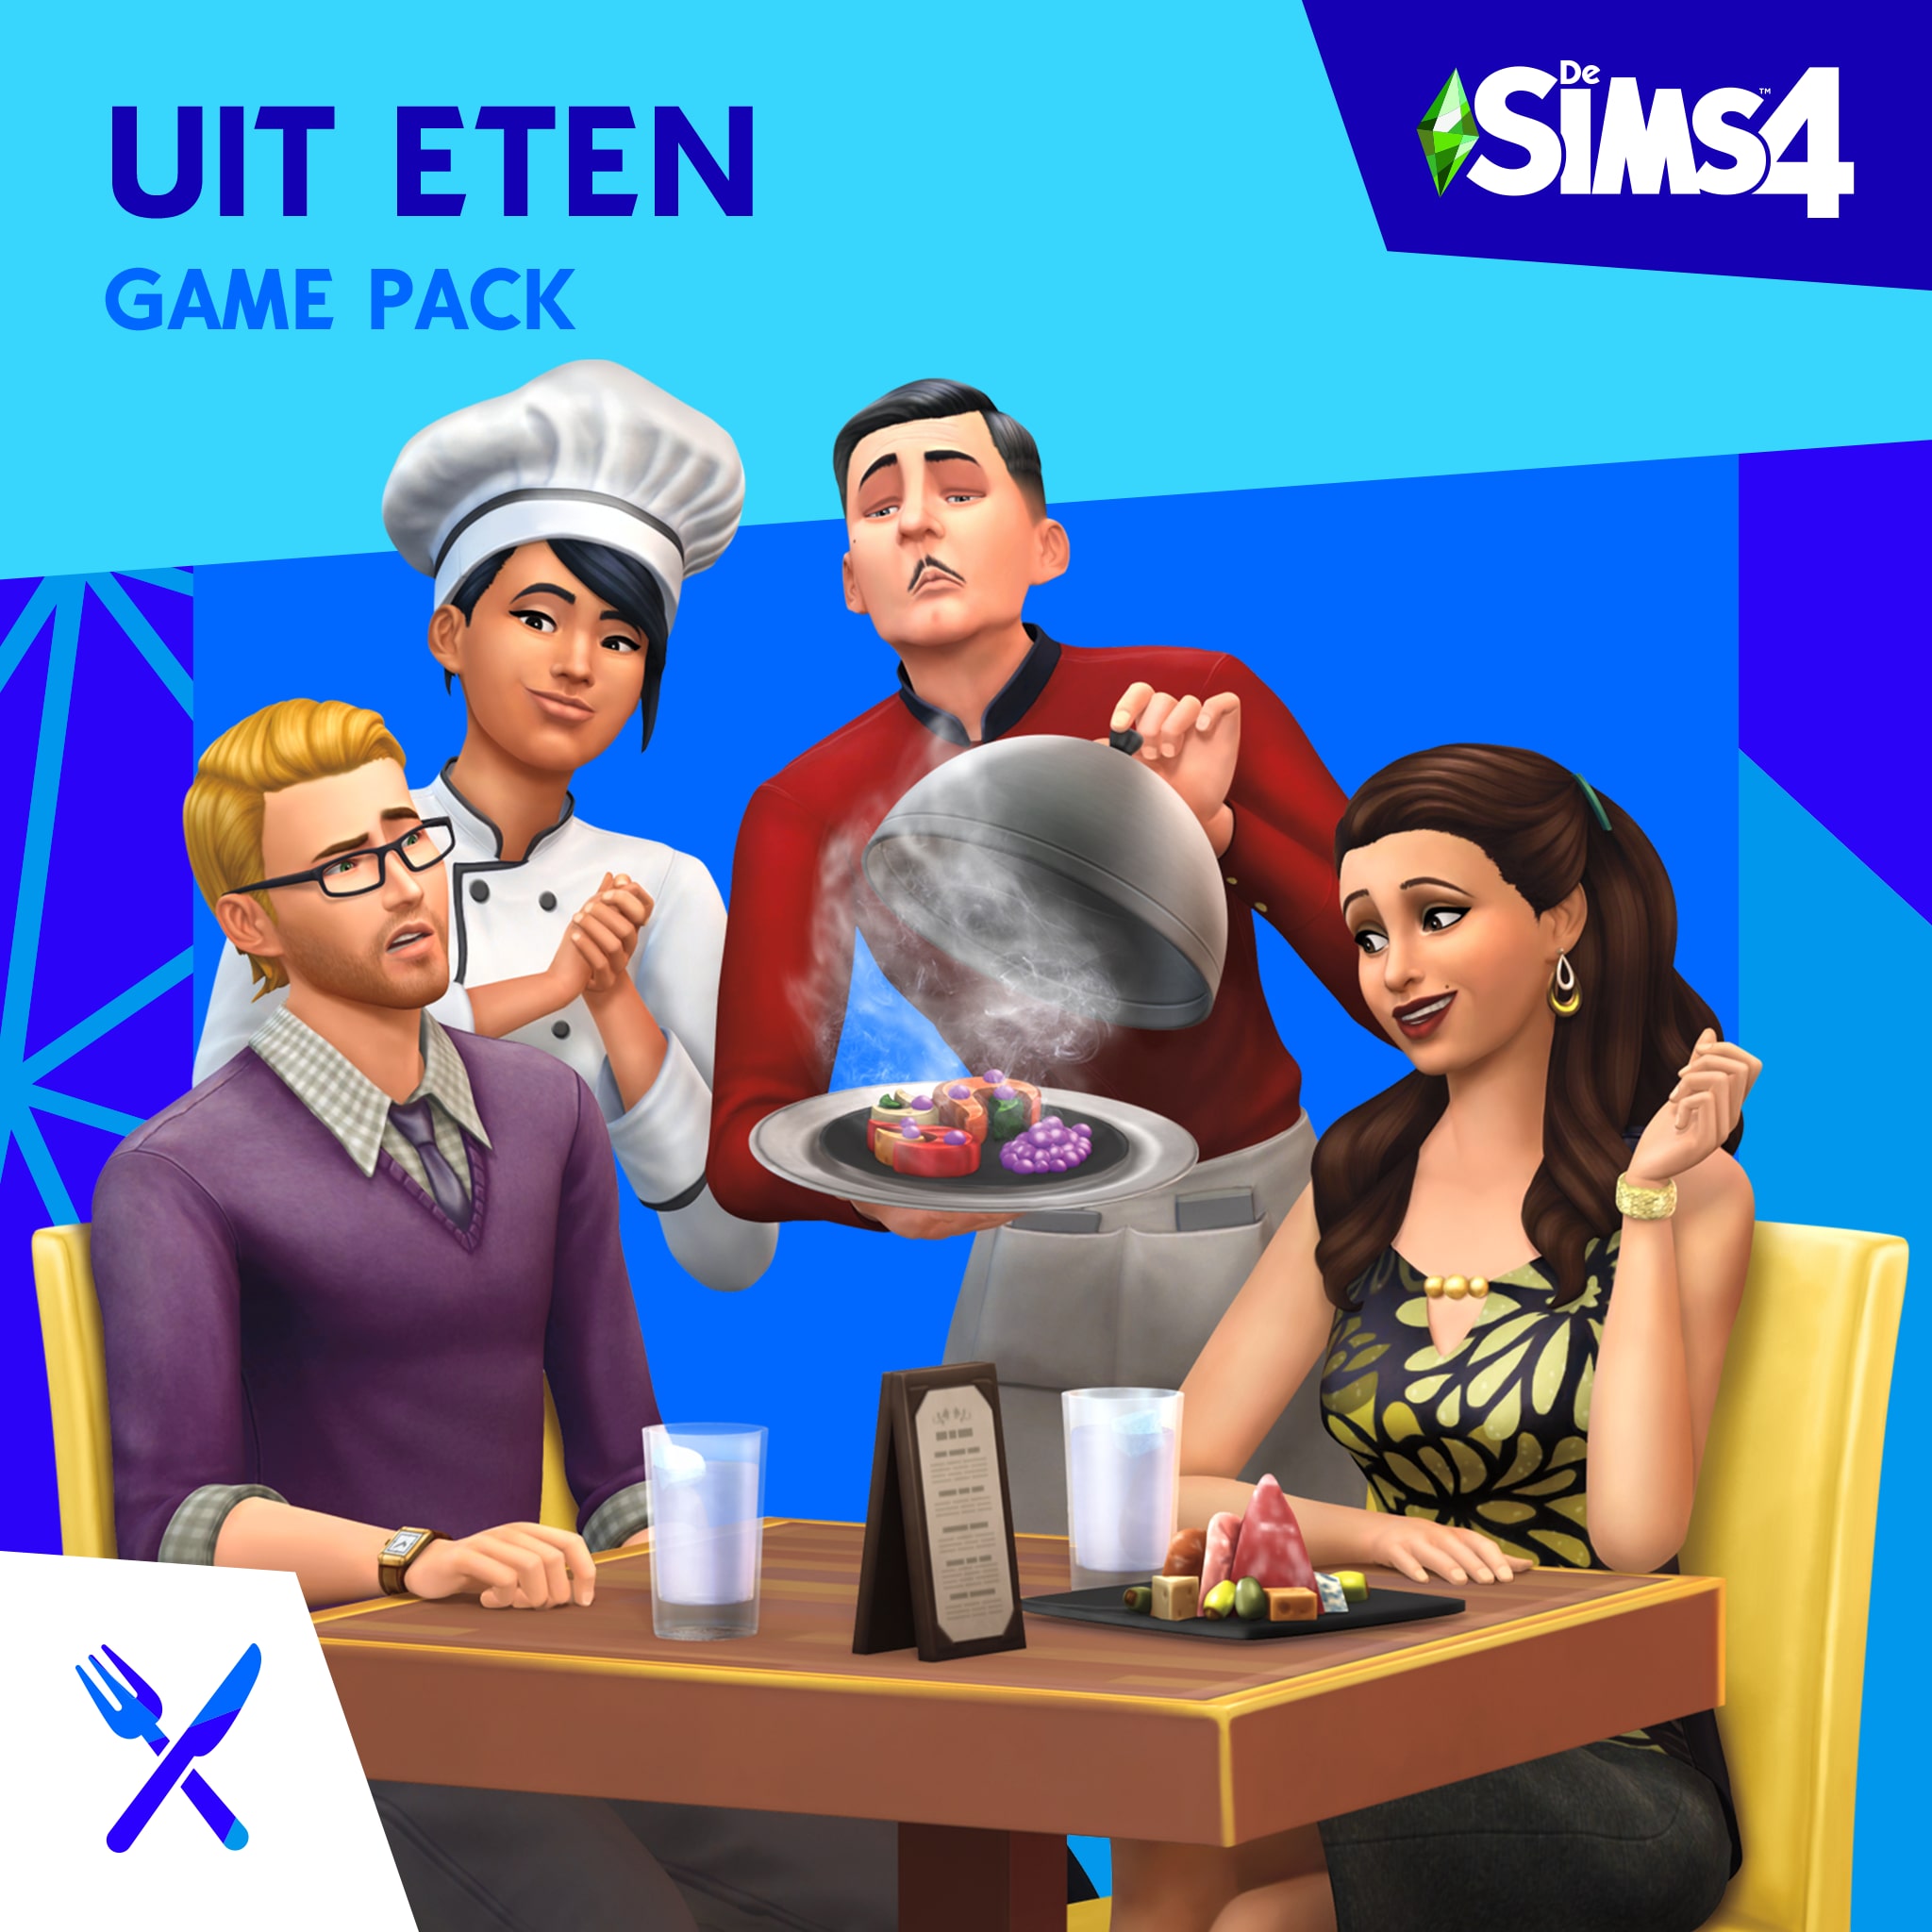 De Sims™ 4 Uit Eten